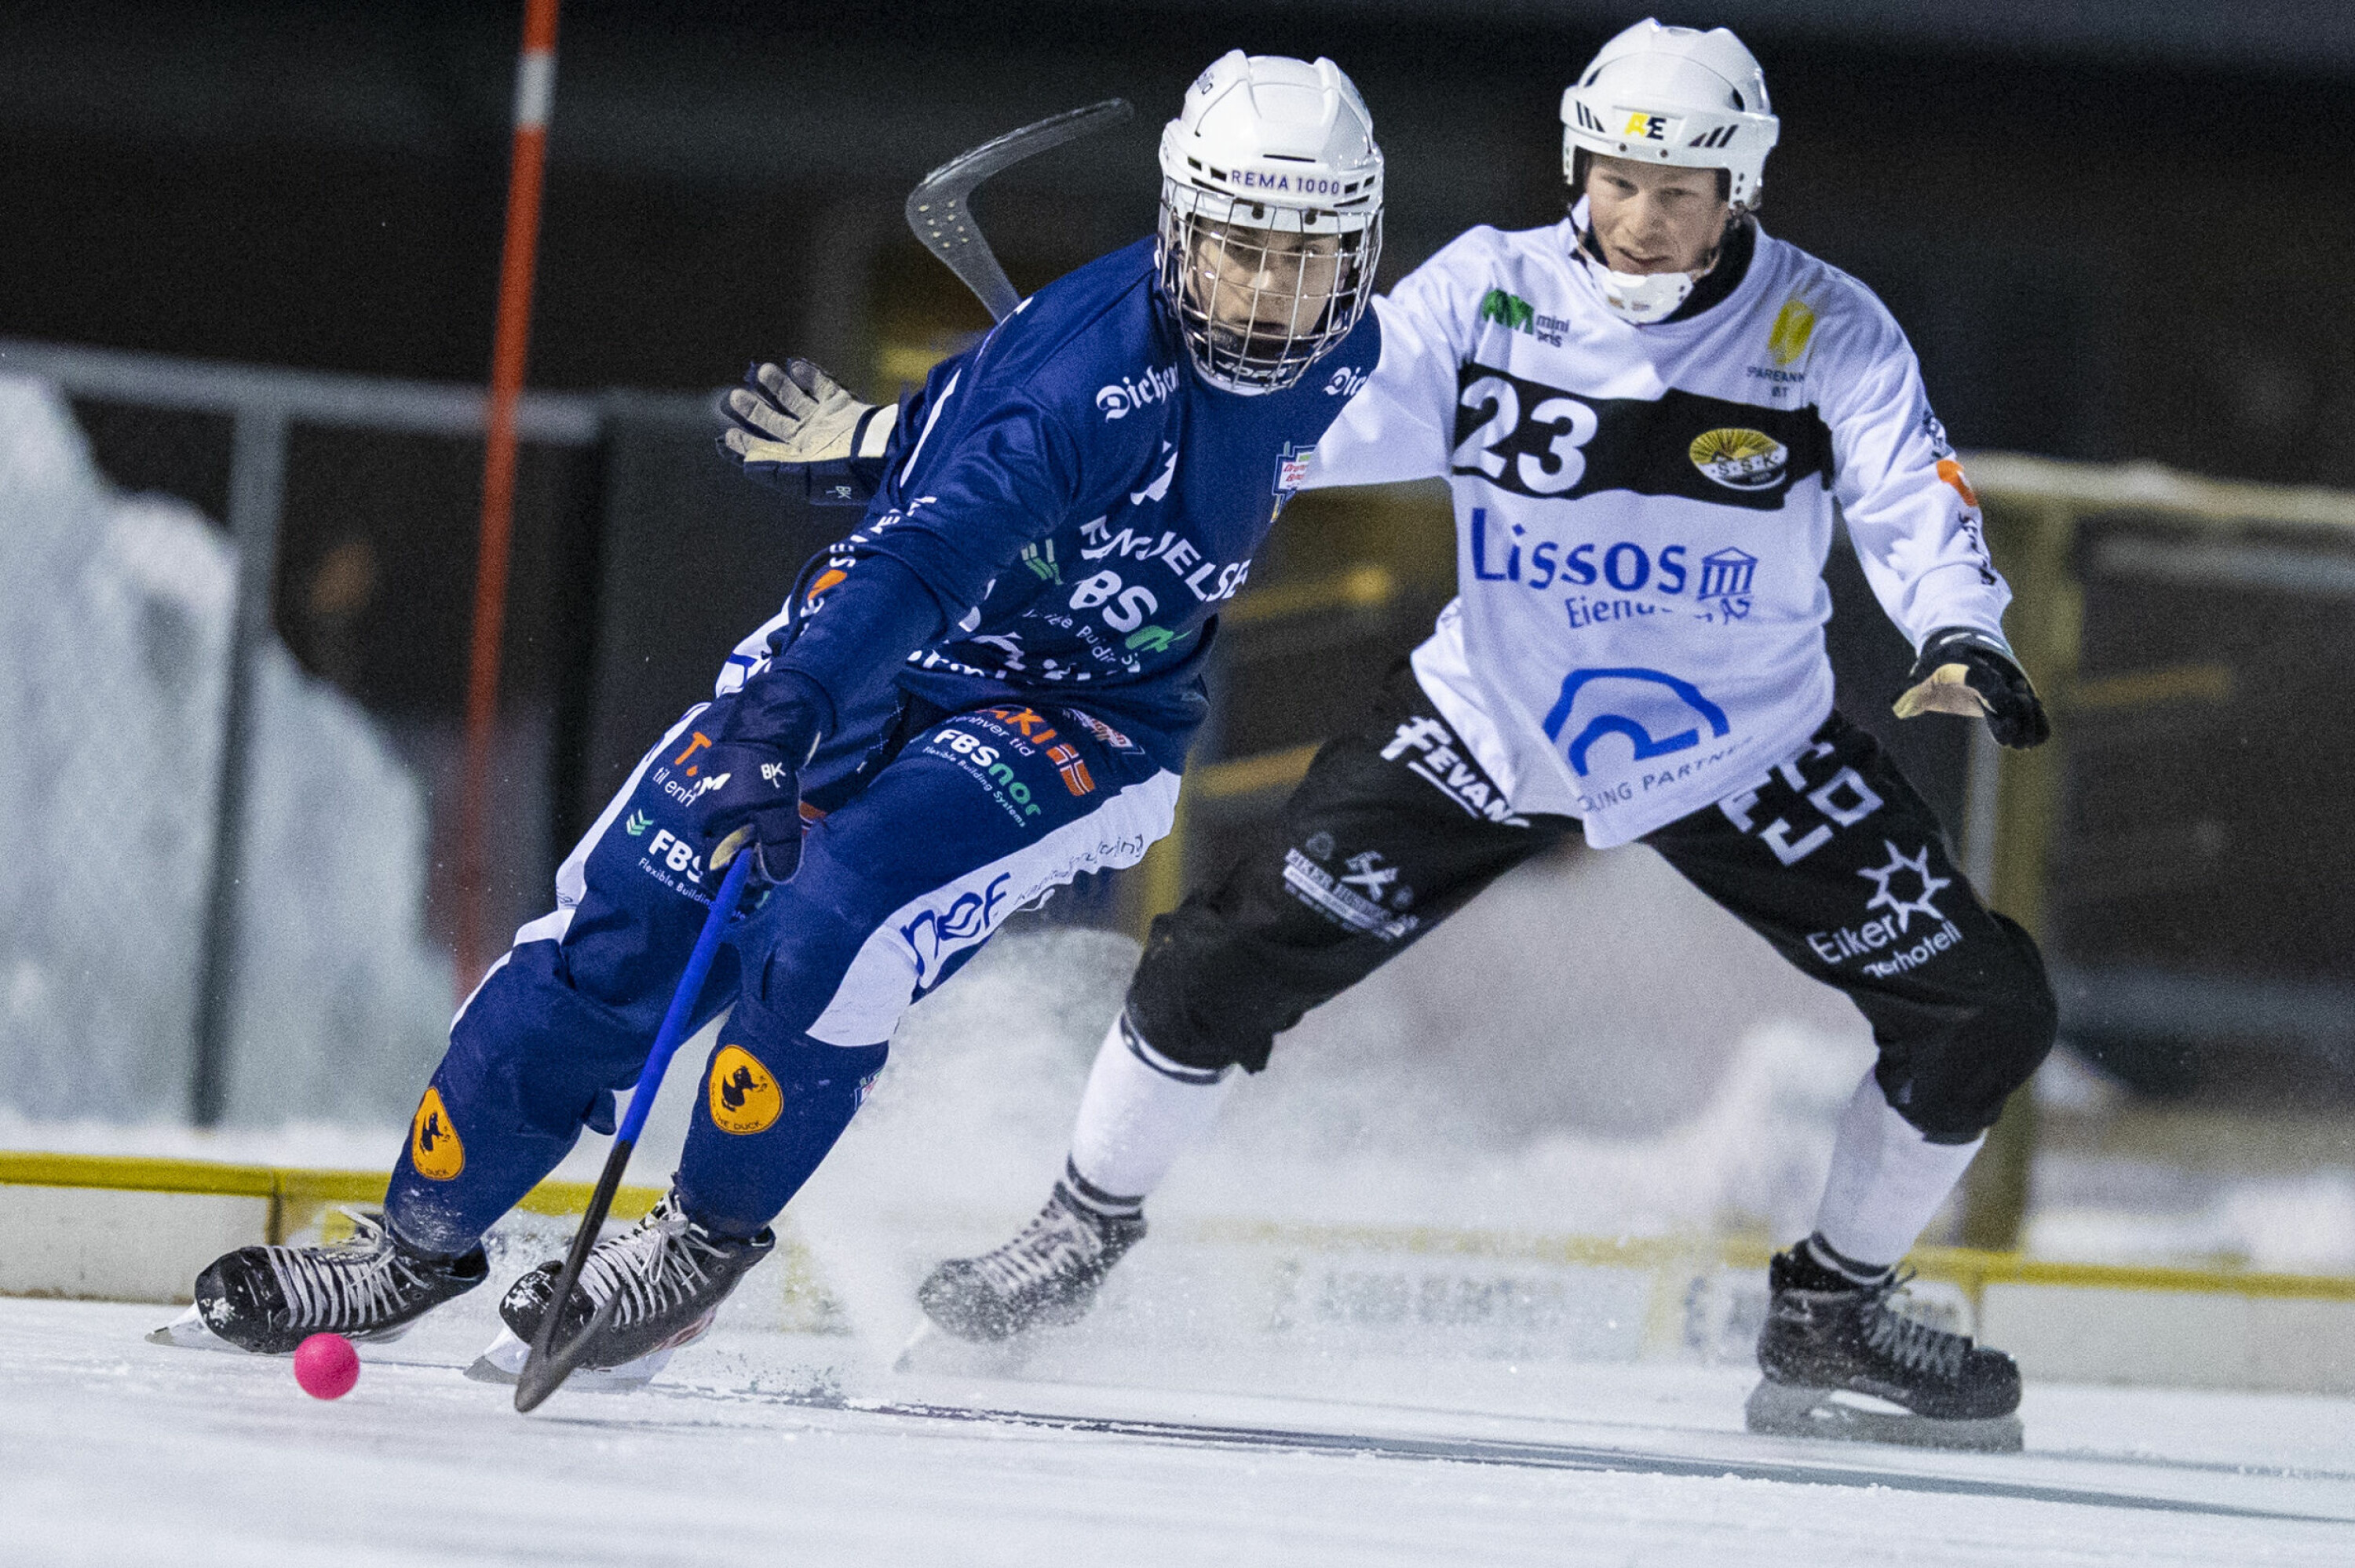 KLASSISK DUELL: Drammen og Solberg kan fort vekk møtes også i årets NM-sluttspill, foreløpig er Drammen Bandy og Mathias Farnes et hestehode foran SSK og Christopher Nålby.